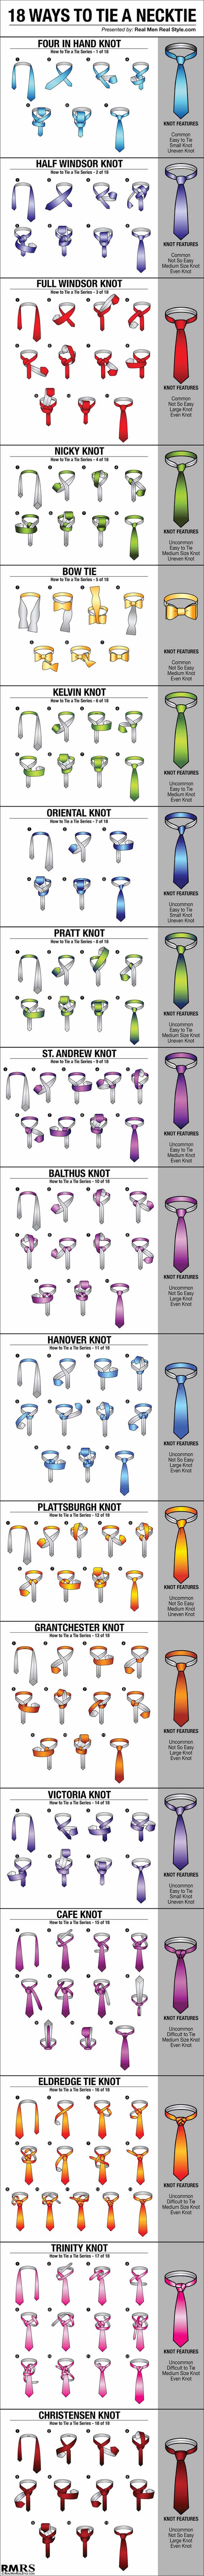 18-Ways-To-Tie-A-Necktie-POSTERv1r1